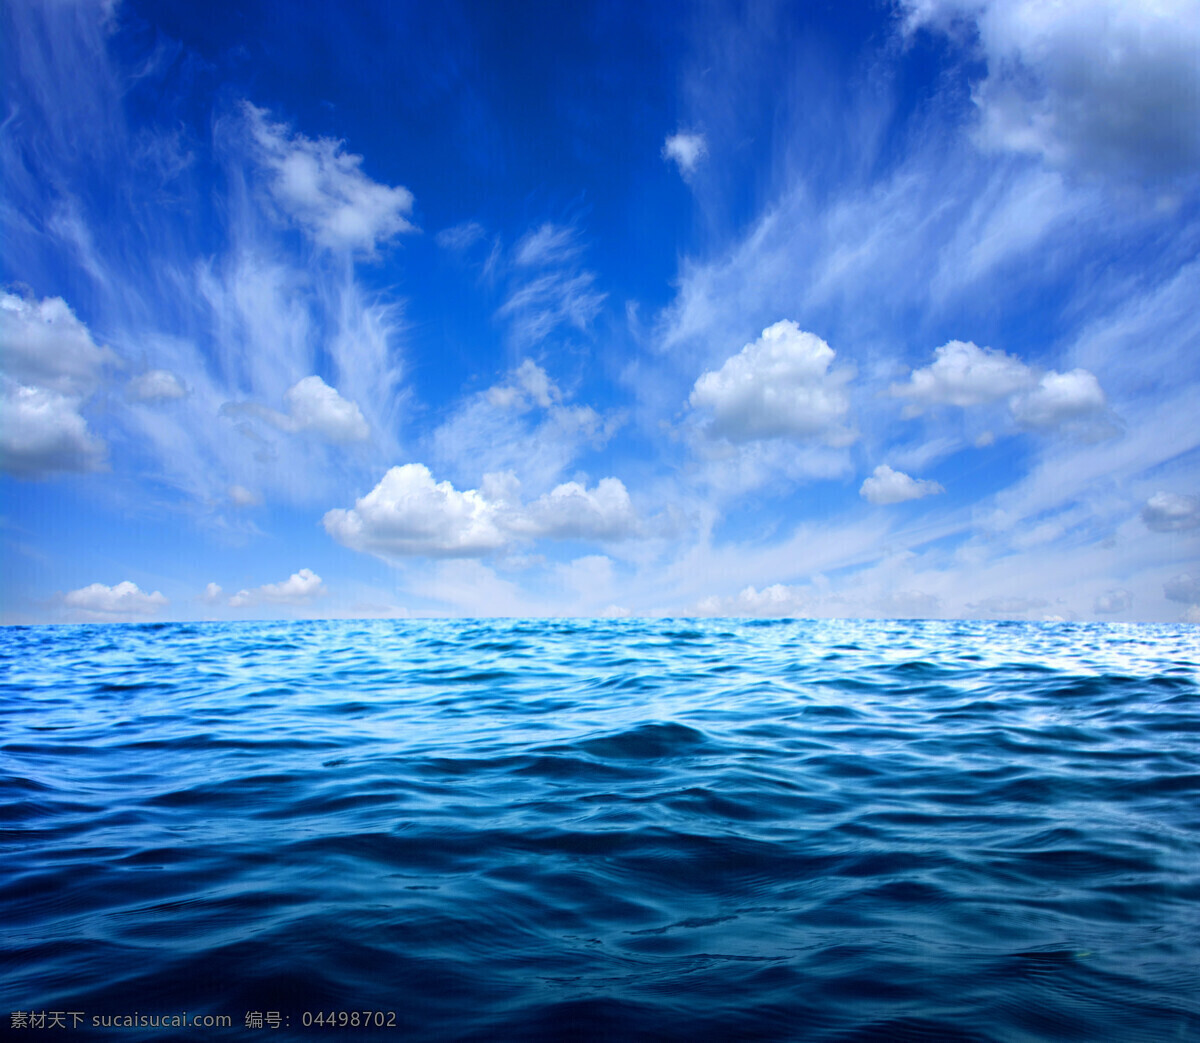 唯美 蓝天 白云 大海 高清 风景 海洋 美景 蓝色 浪花 海浪 海面 海蓝 天空 海面风景 美丽风光 波浪 美丽景色 大海图片 风景图片